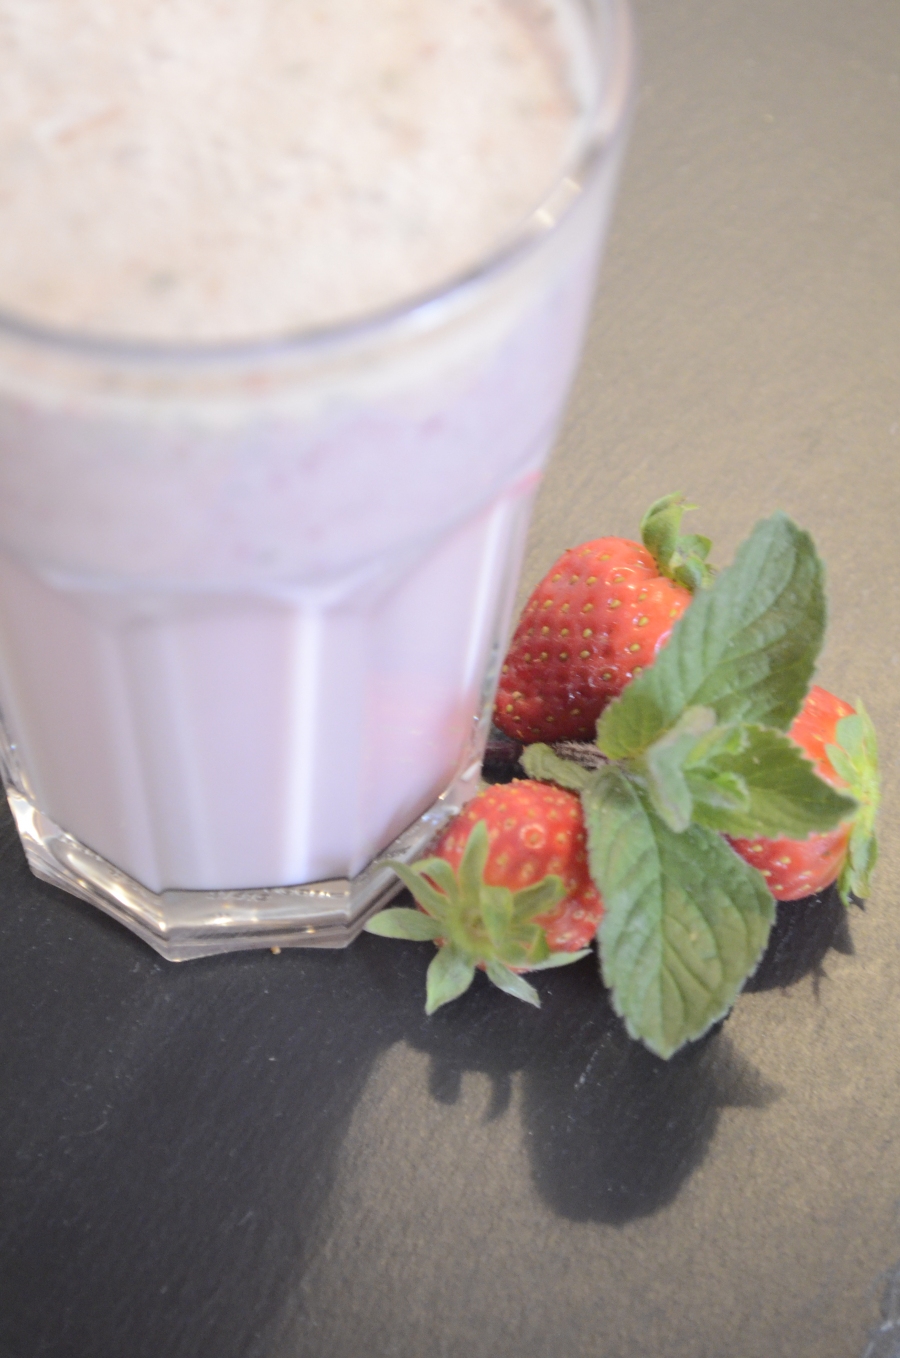 Zusammen mit 1 - 2 Blätter frischer Minze schmeckt der Erdbeer-Milchshake herrlich frisch & fruchtig.